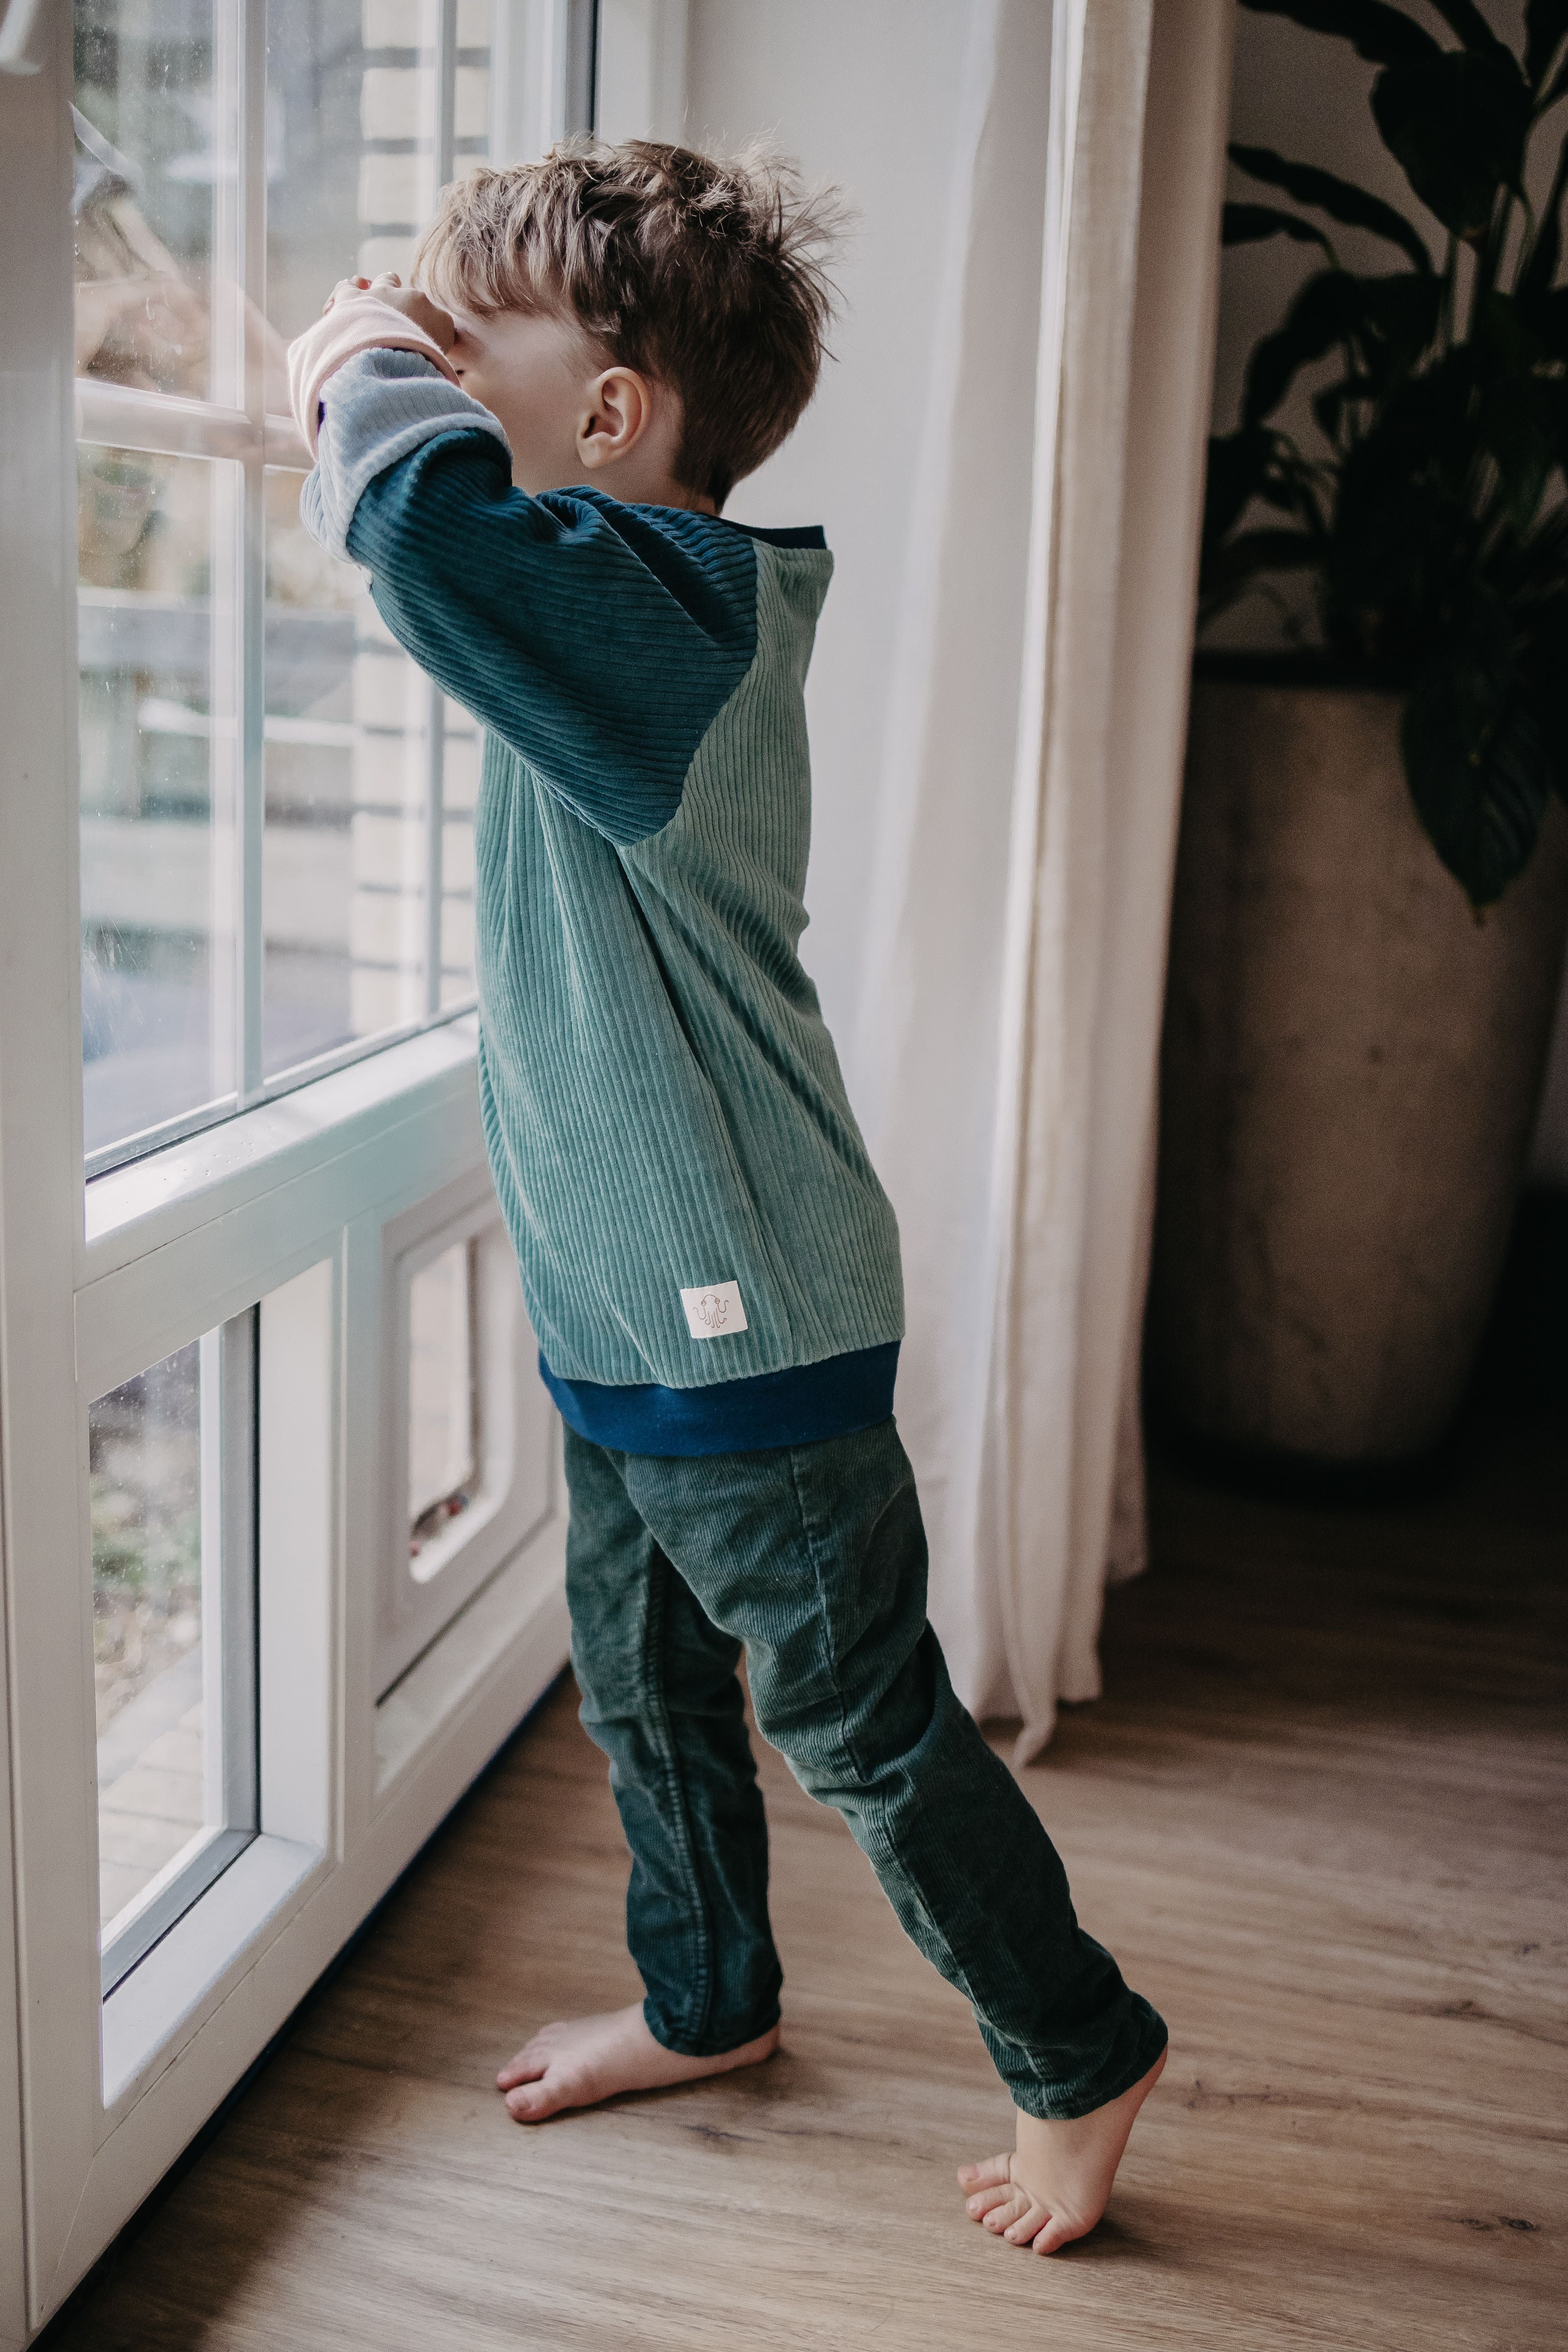  Ein Kind guckt aus dem Fenster und trägt dabei den blauen Alltagsbegleiter im Unisex-Schnitt von Oktopulli